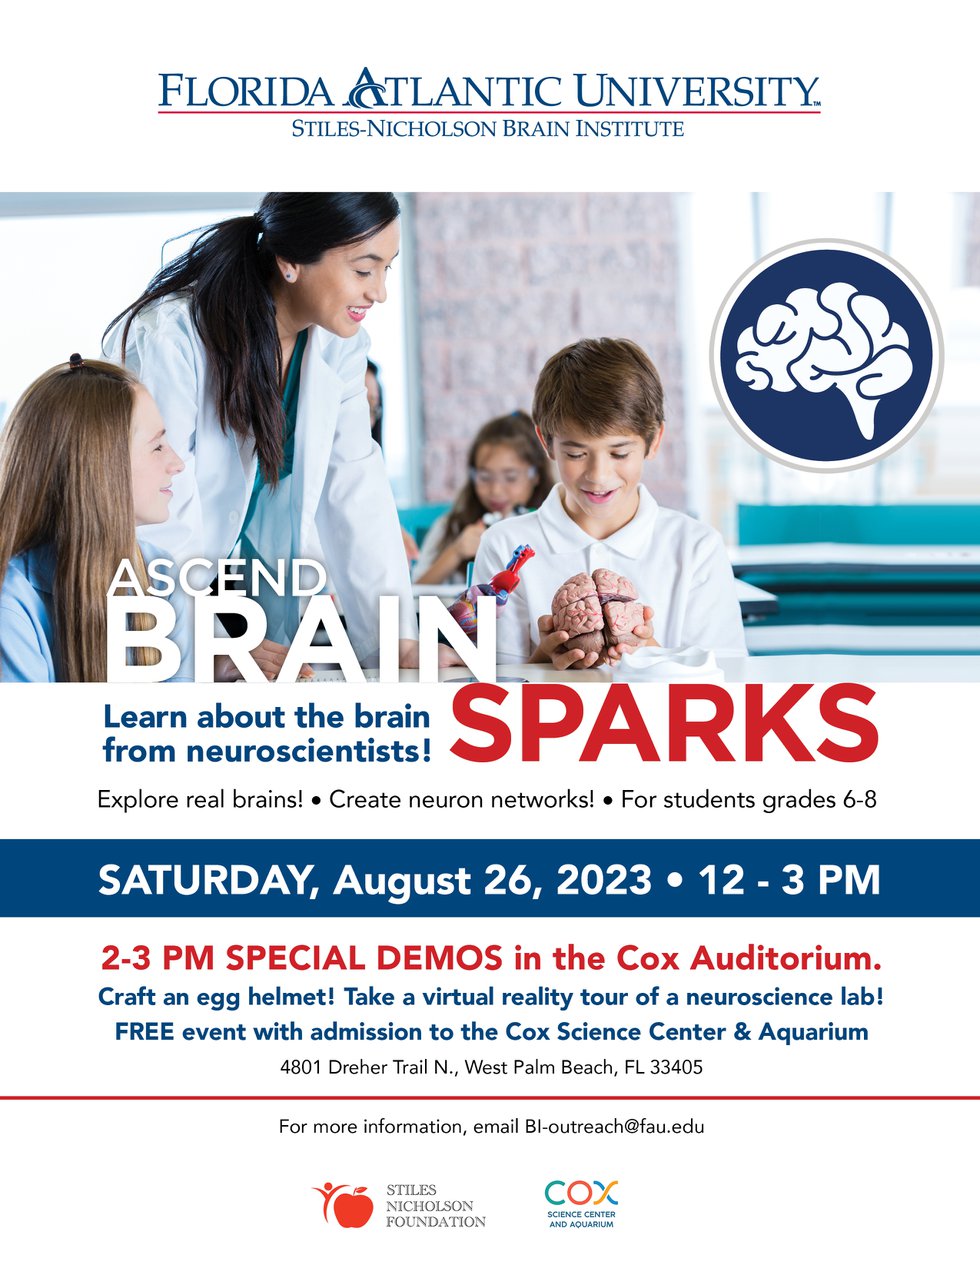 Brain Sparks Aug 26 2023 flyer FINAL.jpg